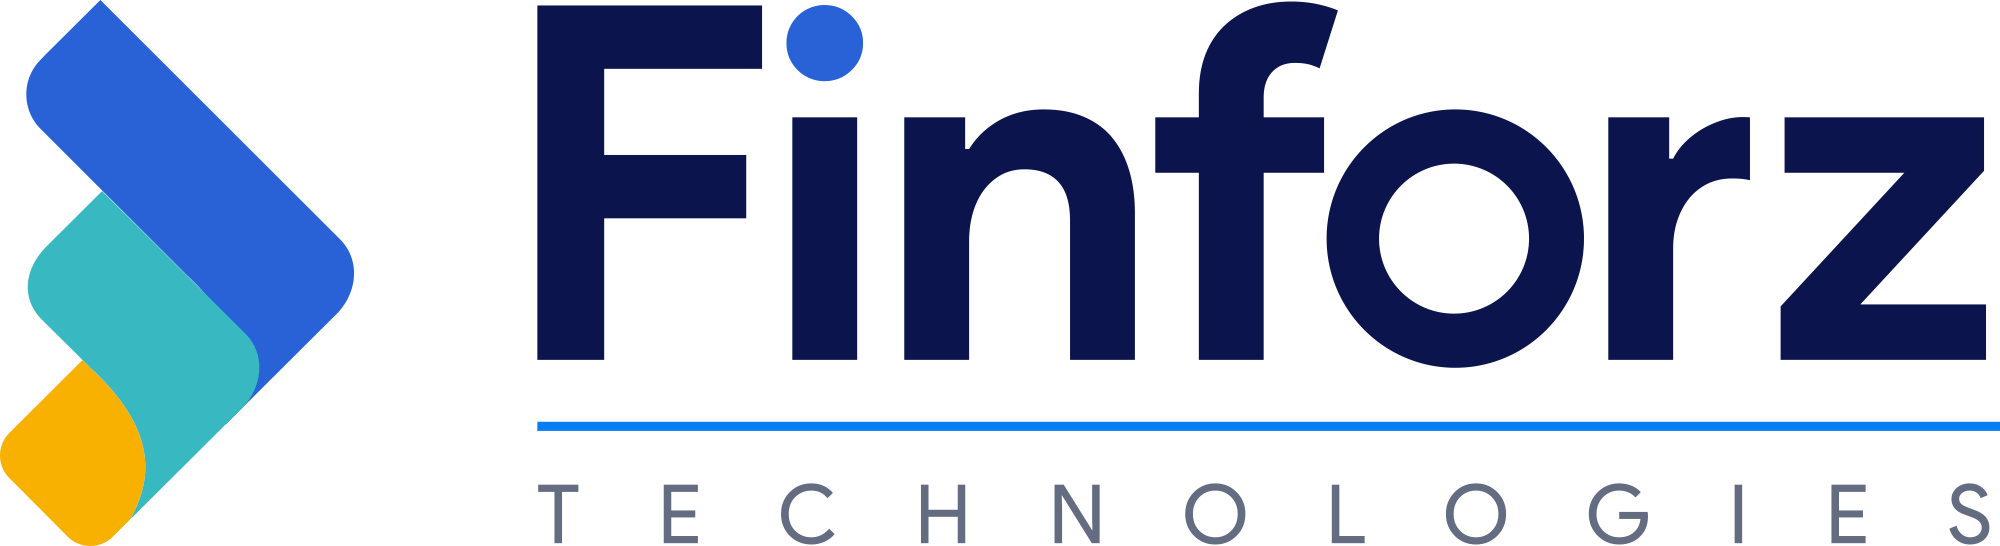 Finforz Technologies